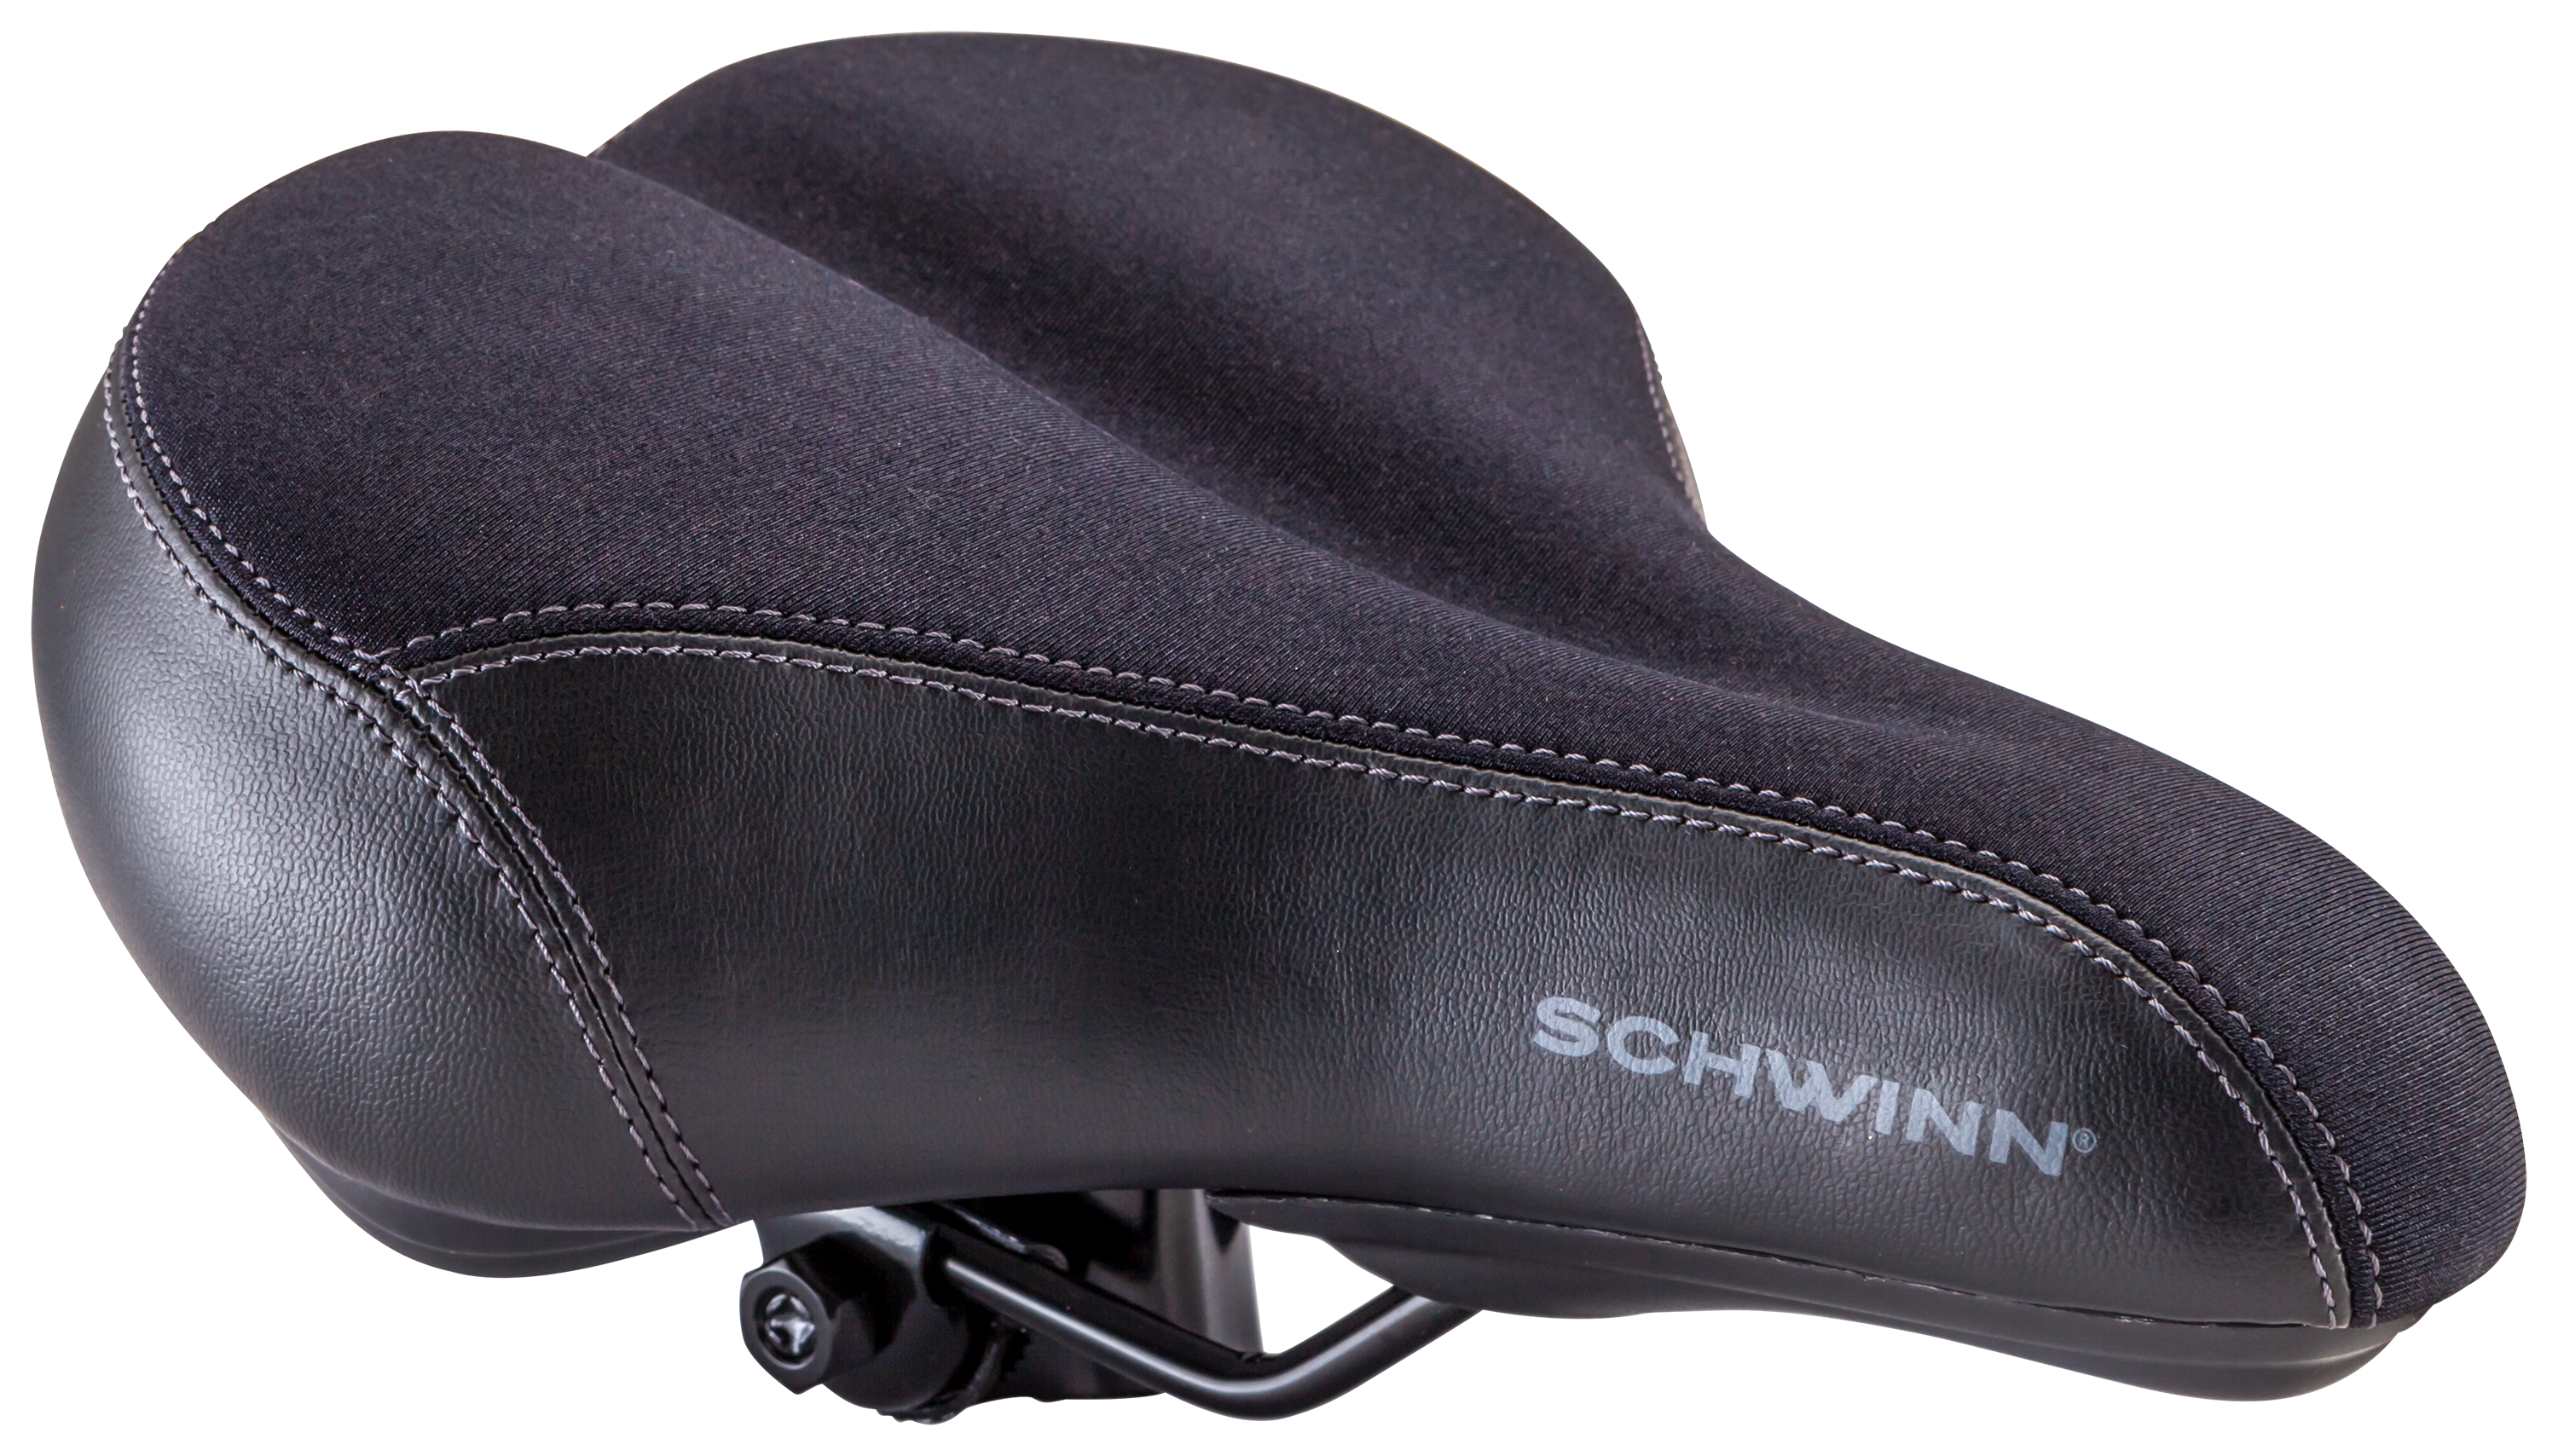 Schwinn Commute Gateway Foam Bike Saddle